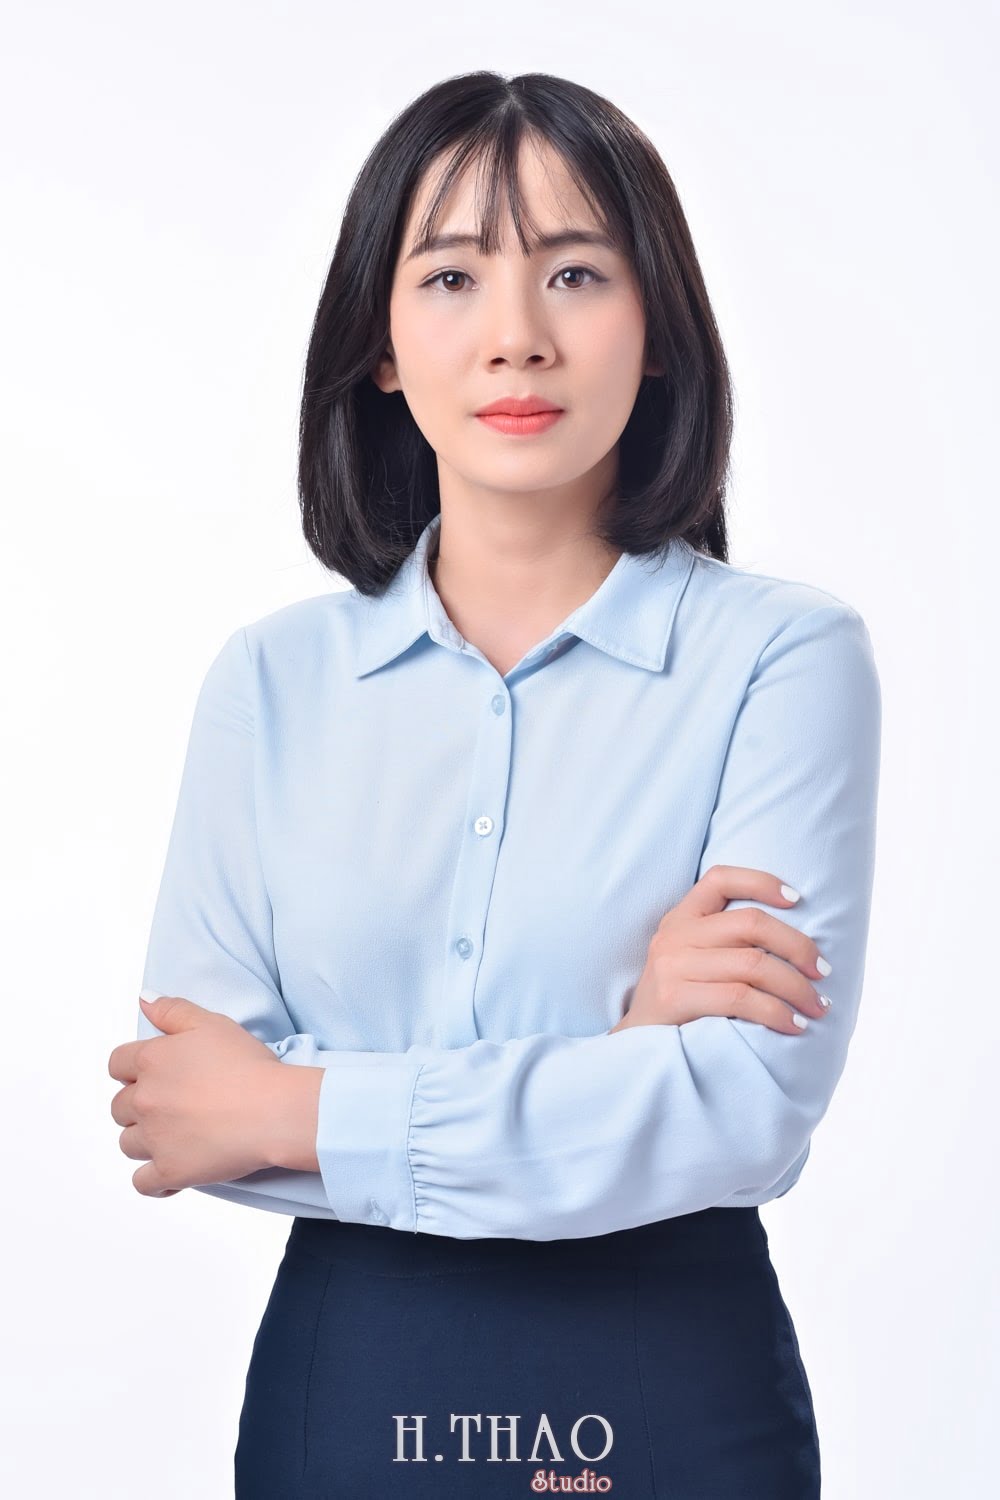 Anh profile  1 min - Album ảnh profile cá nhân chị Hòa đẹp – HThao Studio